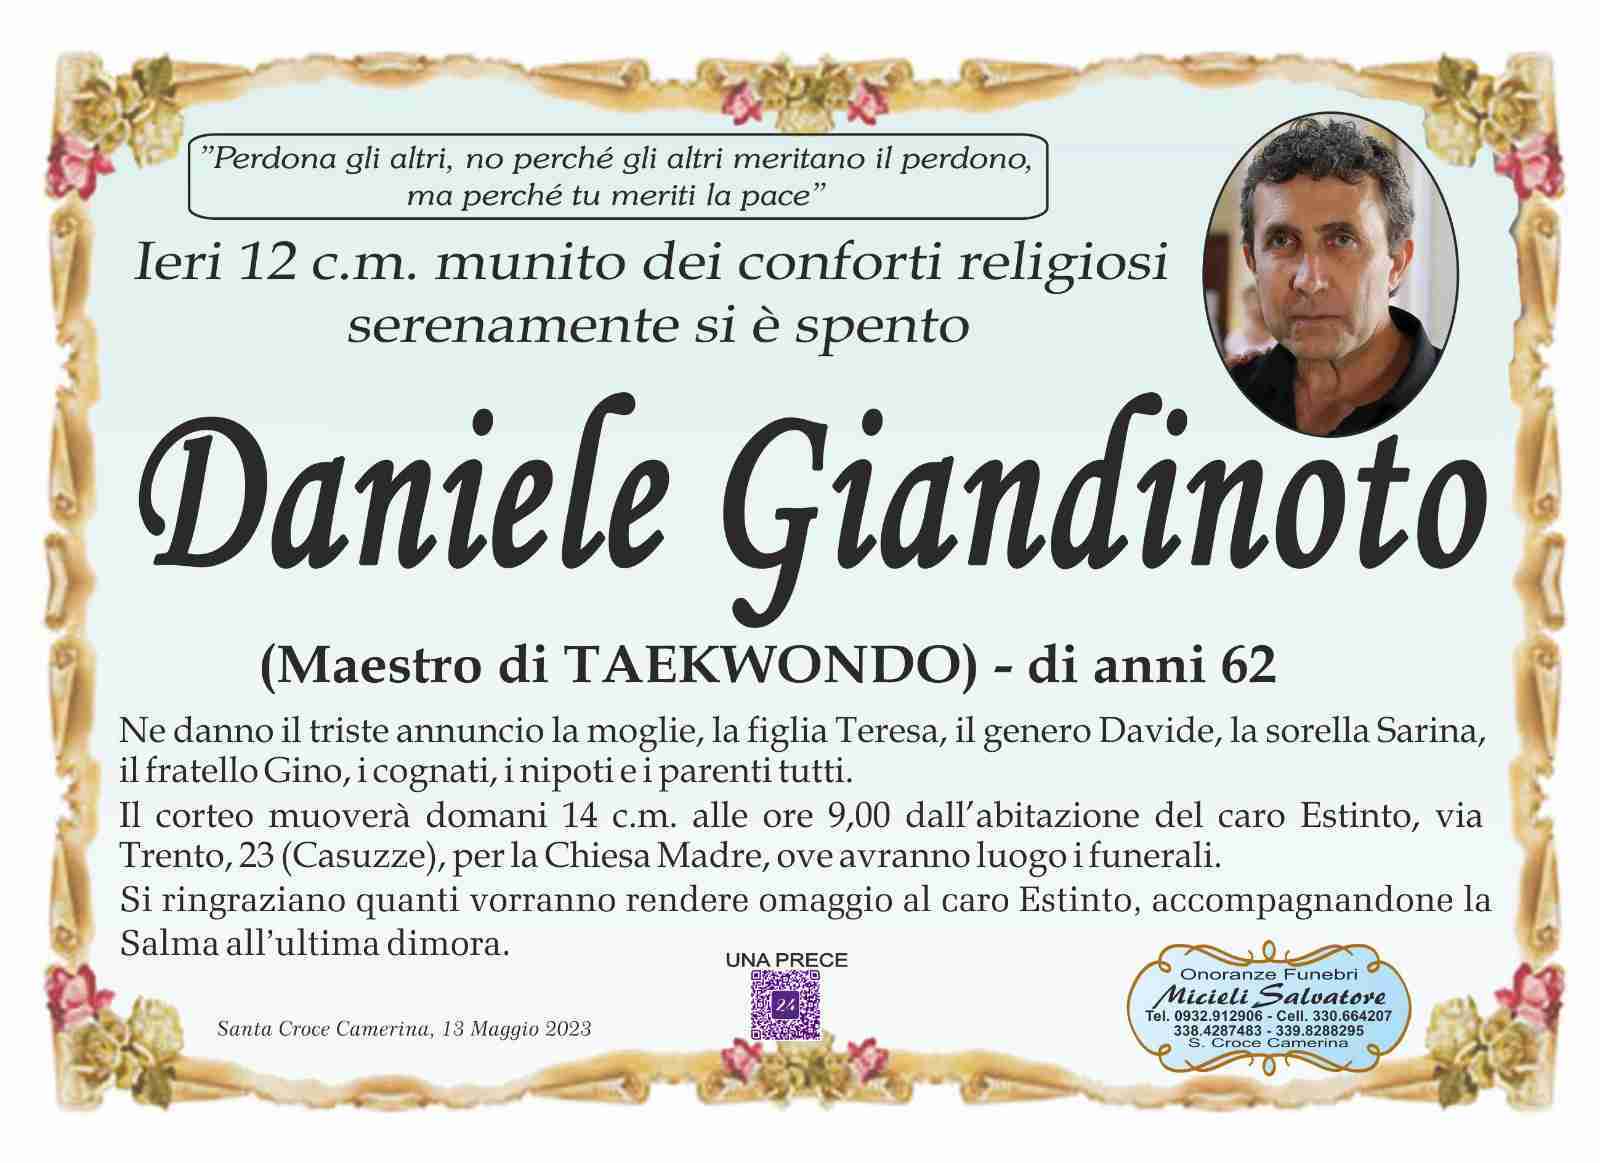 Daniele Giandinoto